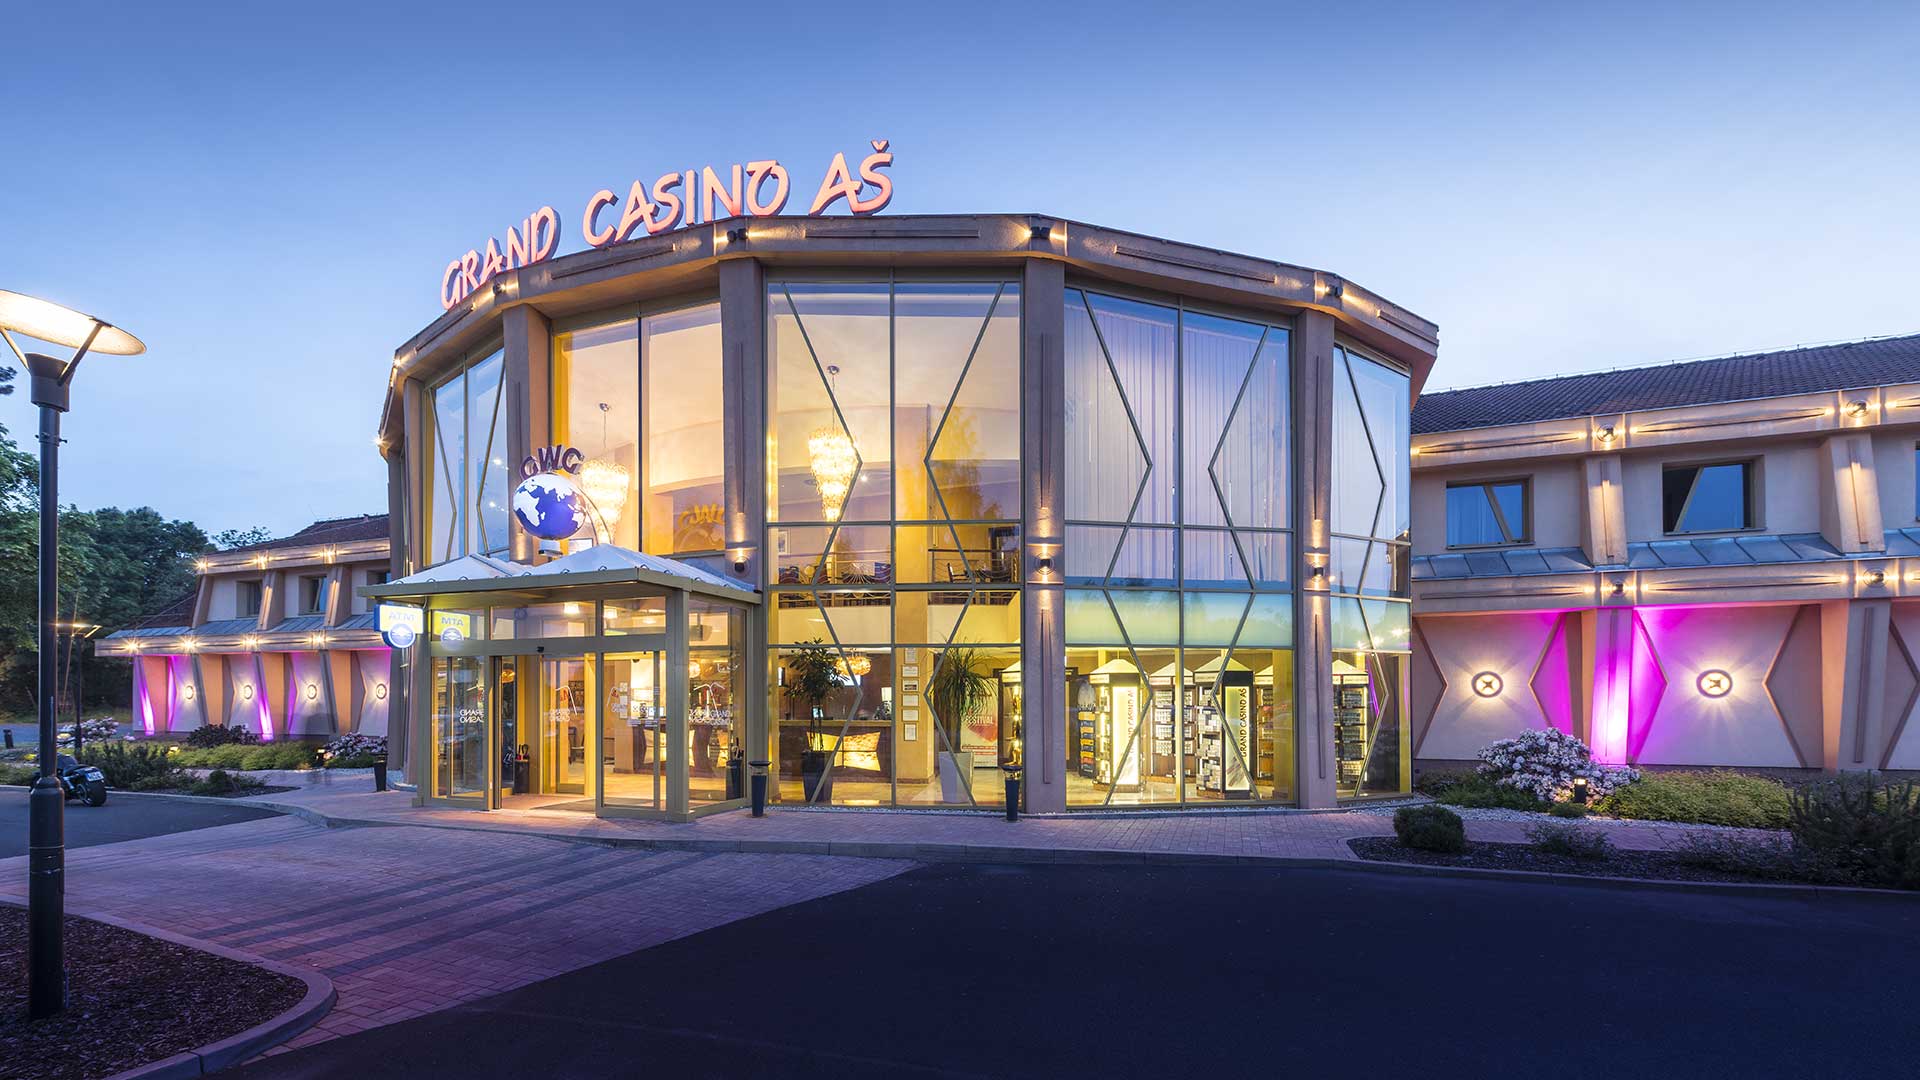 Asch Casino